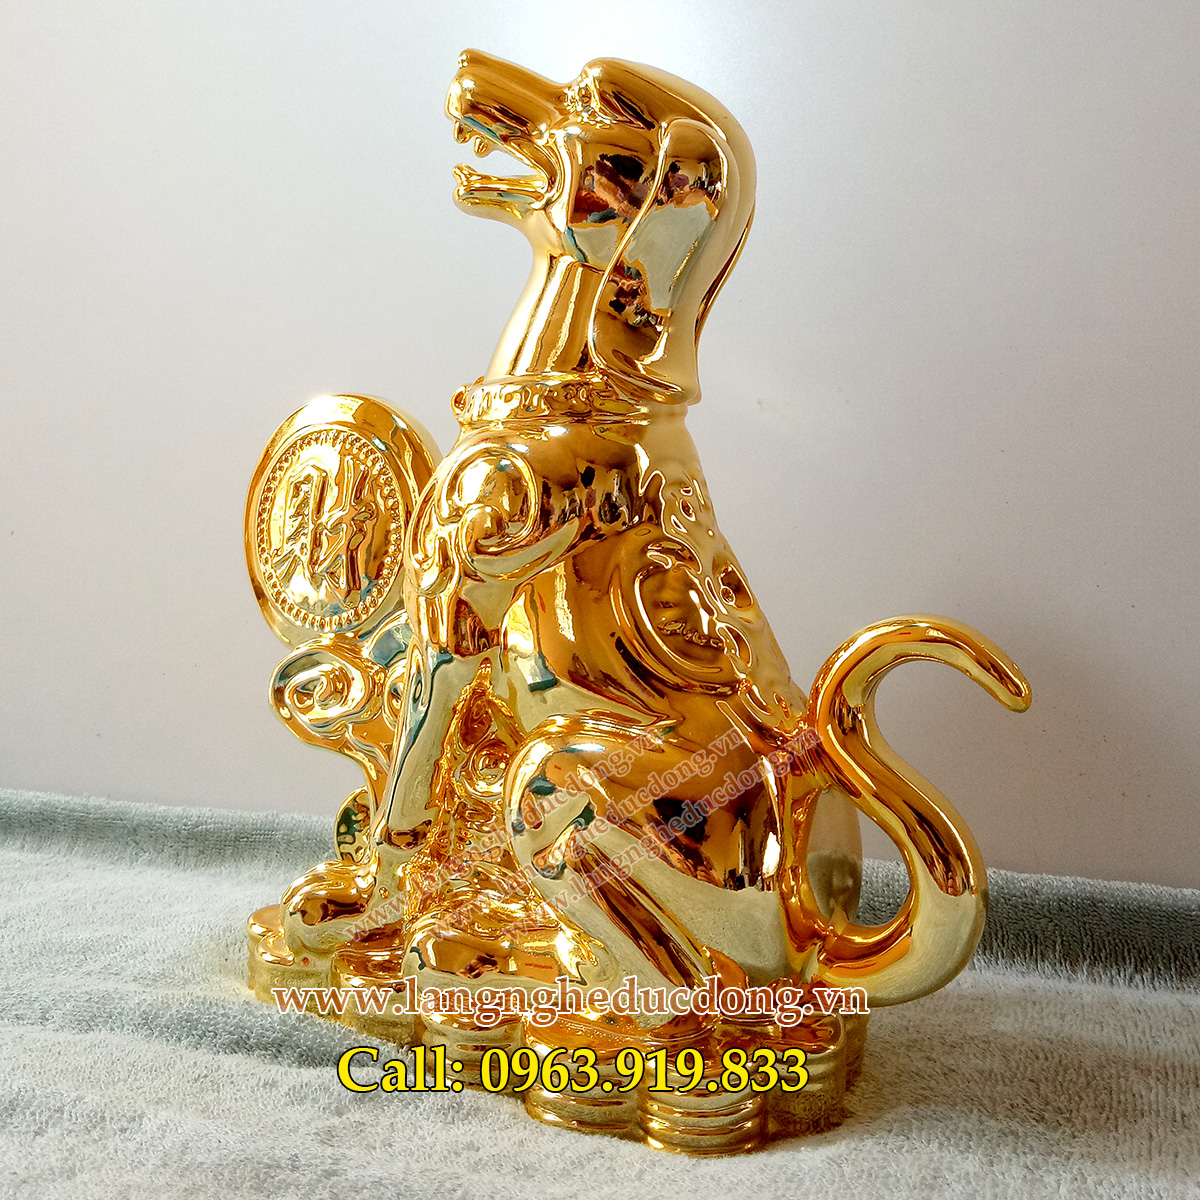 langngheducdong.vn - tượng đồng phong thủy, tượng đồng trang trí, tượng bằng đồng mạ vàng